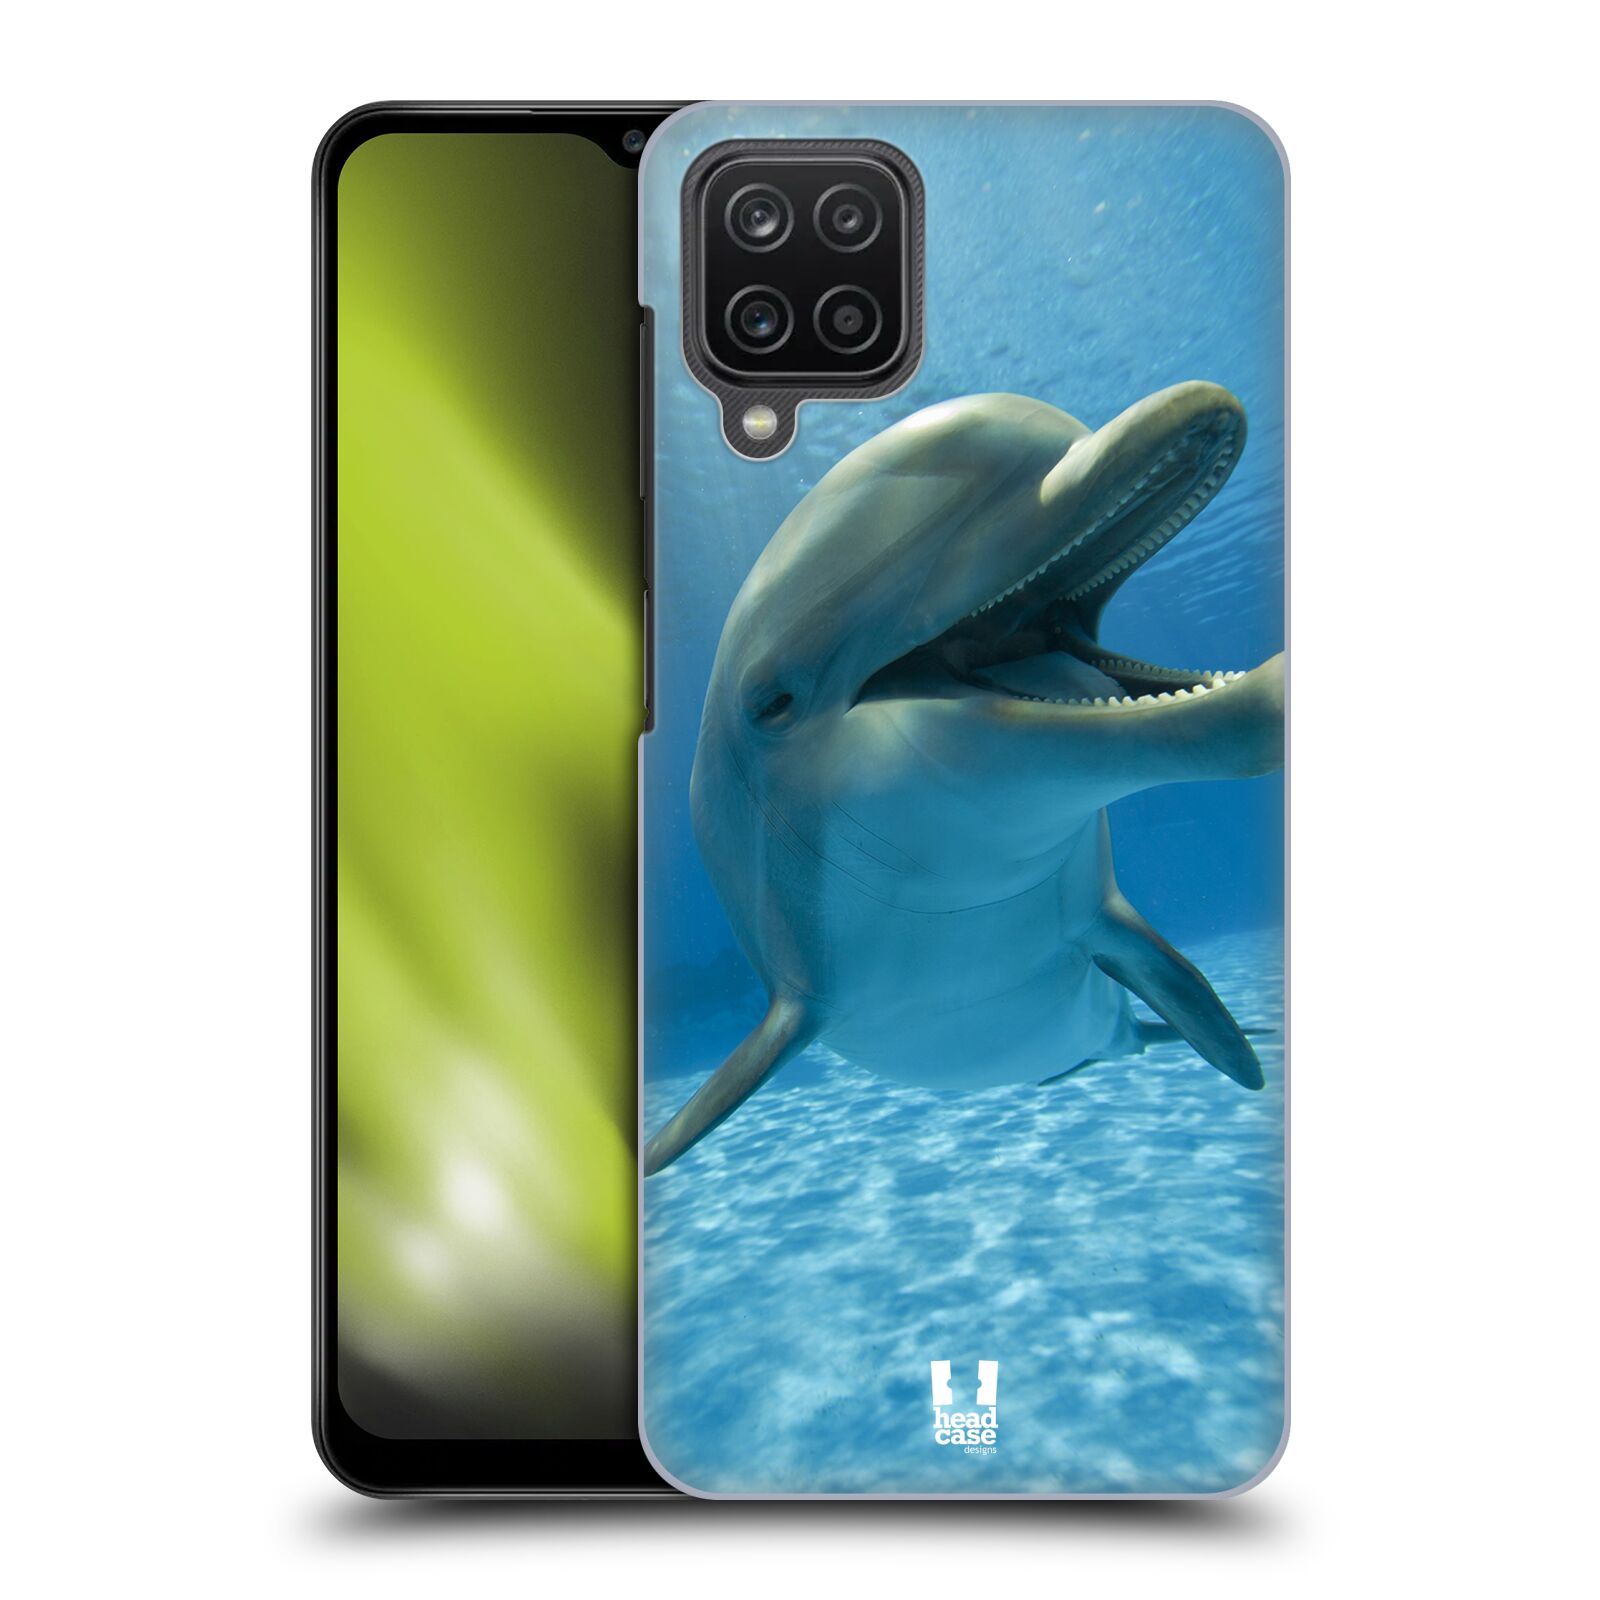 Zadní obal pro mobil Samsung Galaxy A12 - HEAD CASE - Svět zvířat delfín v moři